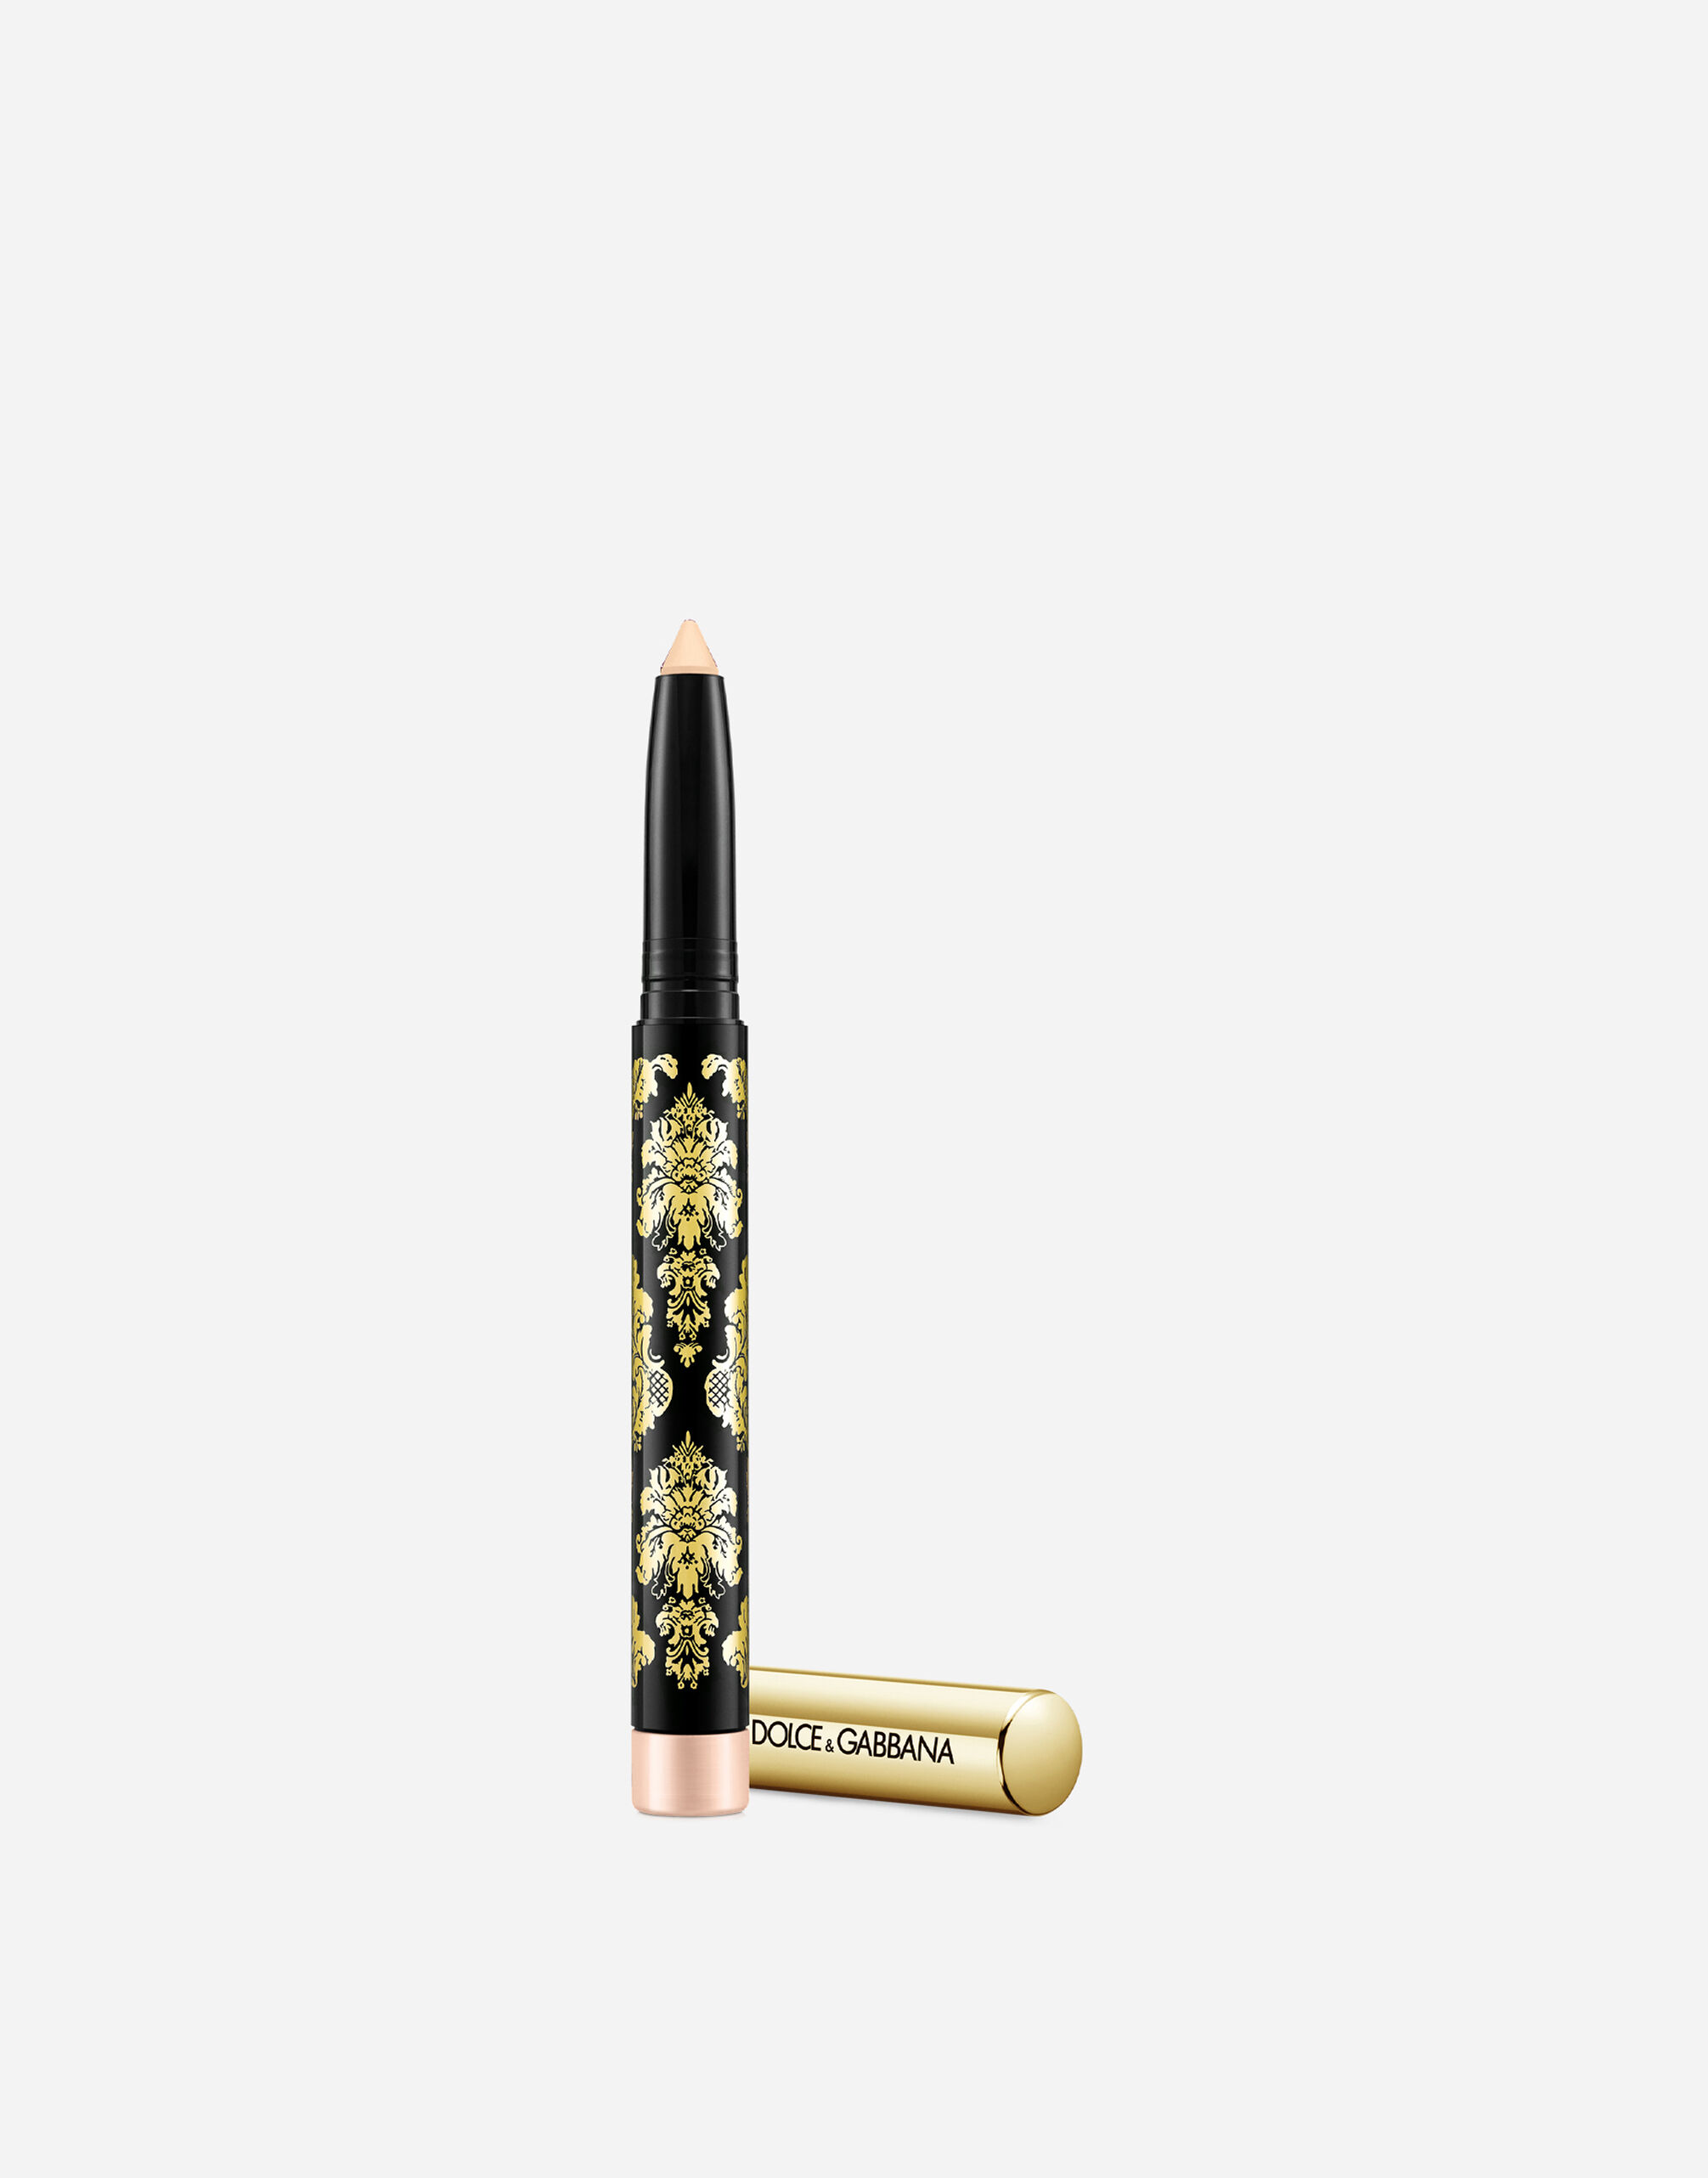 Тени-карандаш для глаз Dolce & Gabbana Intenseyes кремовые, №2 Nude, 1,4 г подвеска маятник тигровый глаз дерево жизни